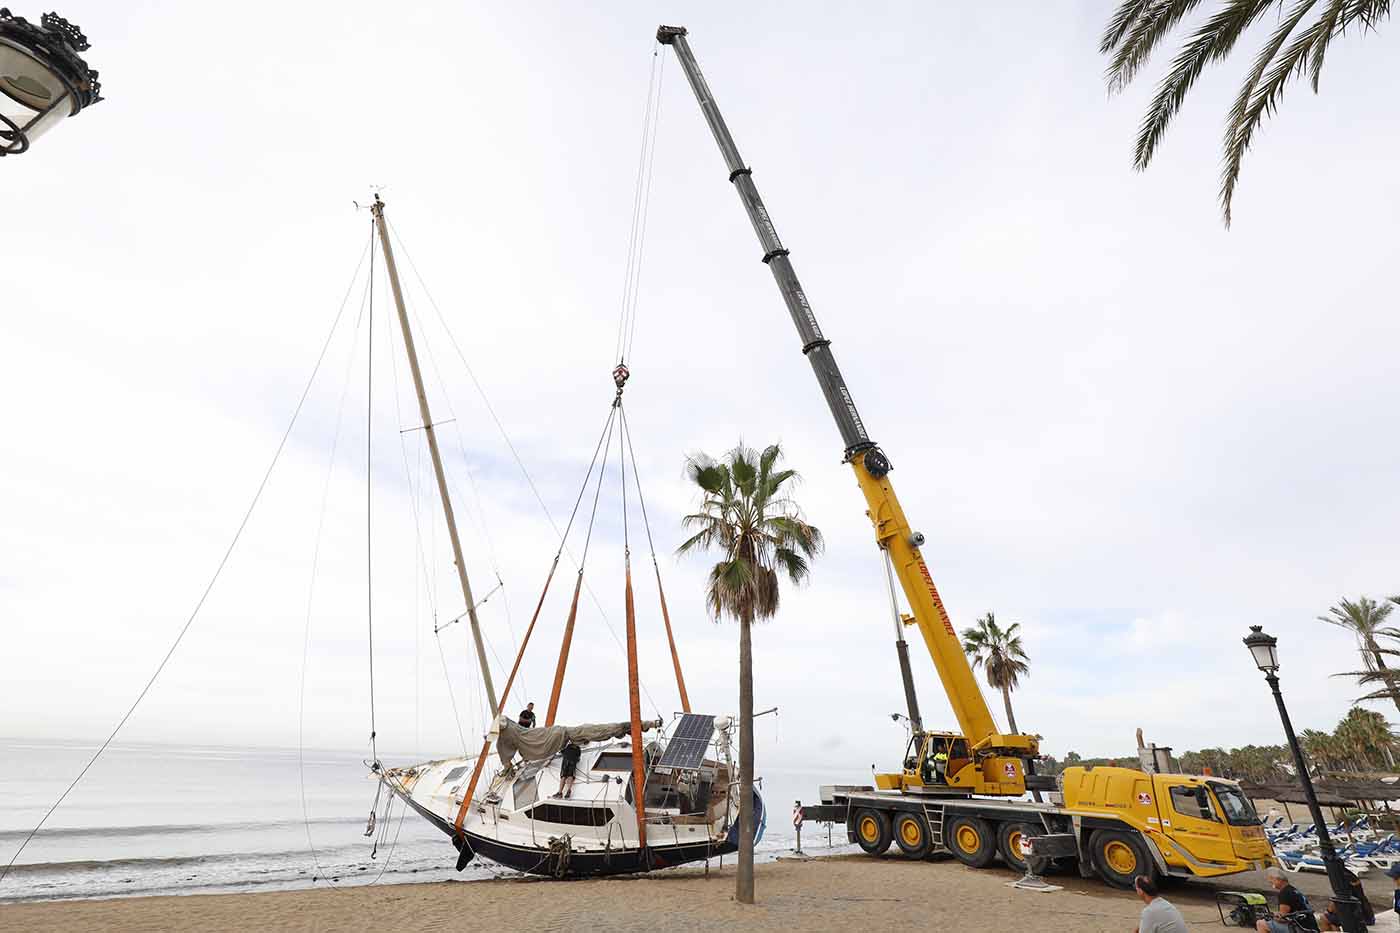 El Ayuntamiento retira el velero encallado en la playa de San Pedro Alcántara y lo traslada a una parcela municipal para su posterior desguace